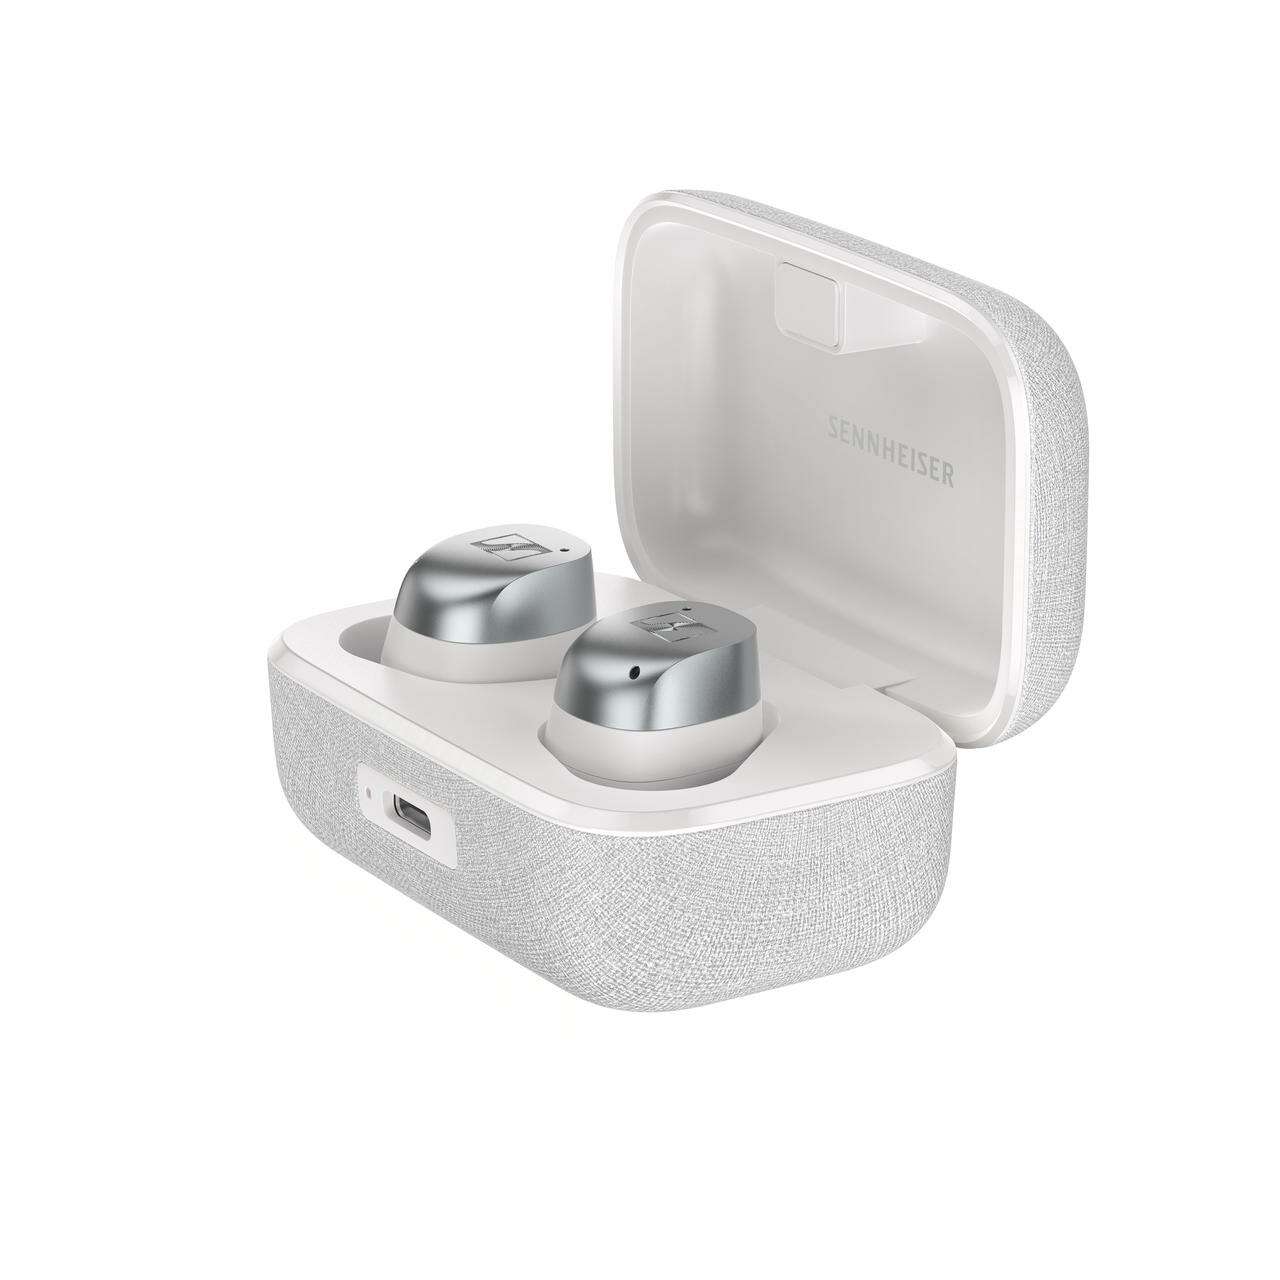 Sennheiser momentum true wireless 4 fülhallgató, fehér-ezüst